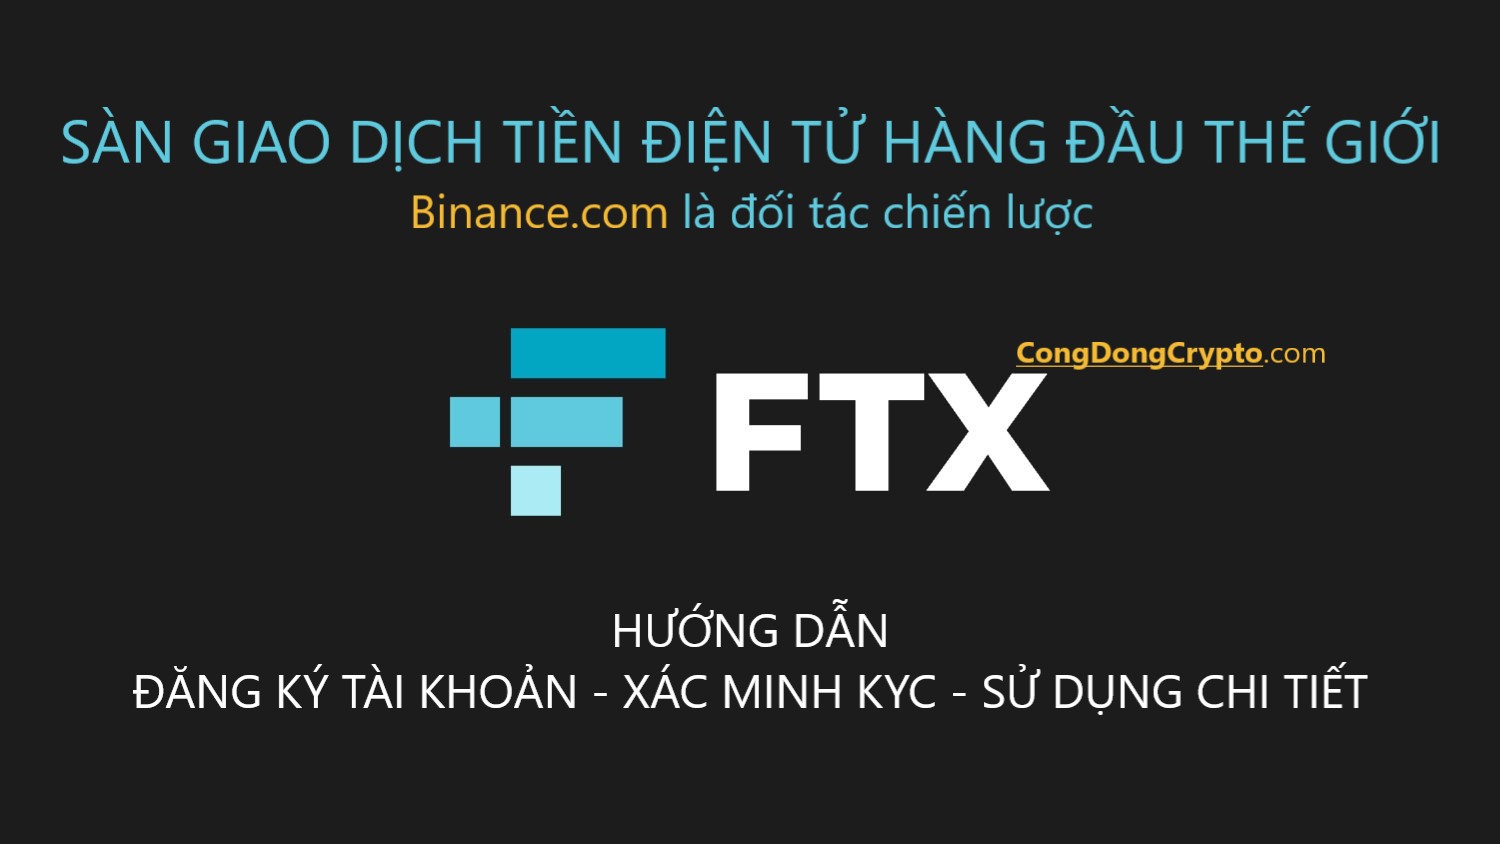 Huong-dan-dang-ky-su-dung-FTX-congdongcrypto.jpg